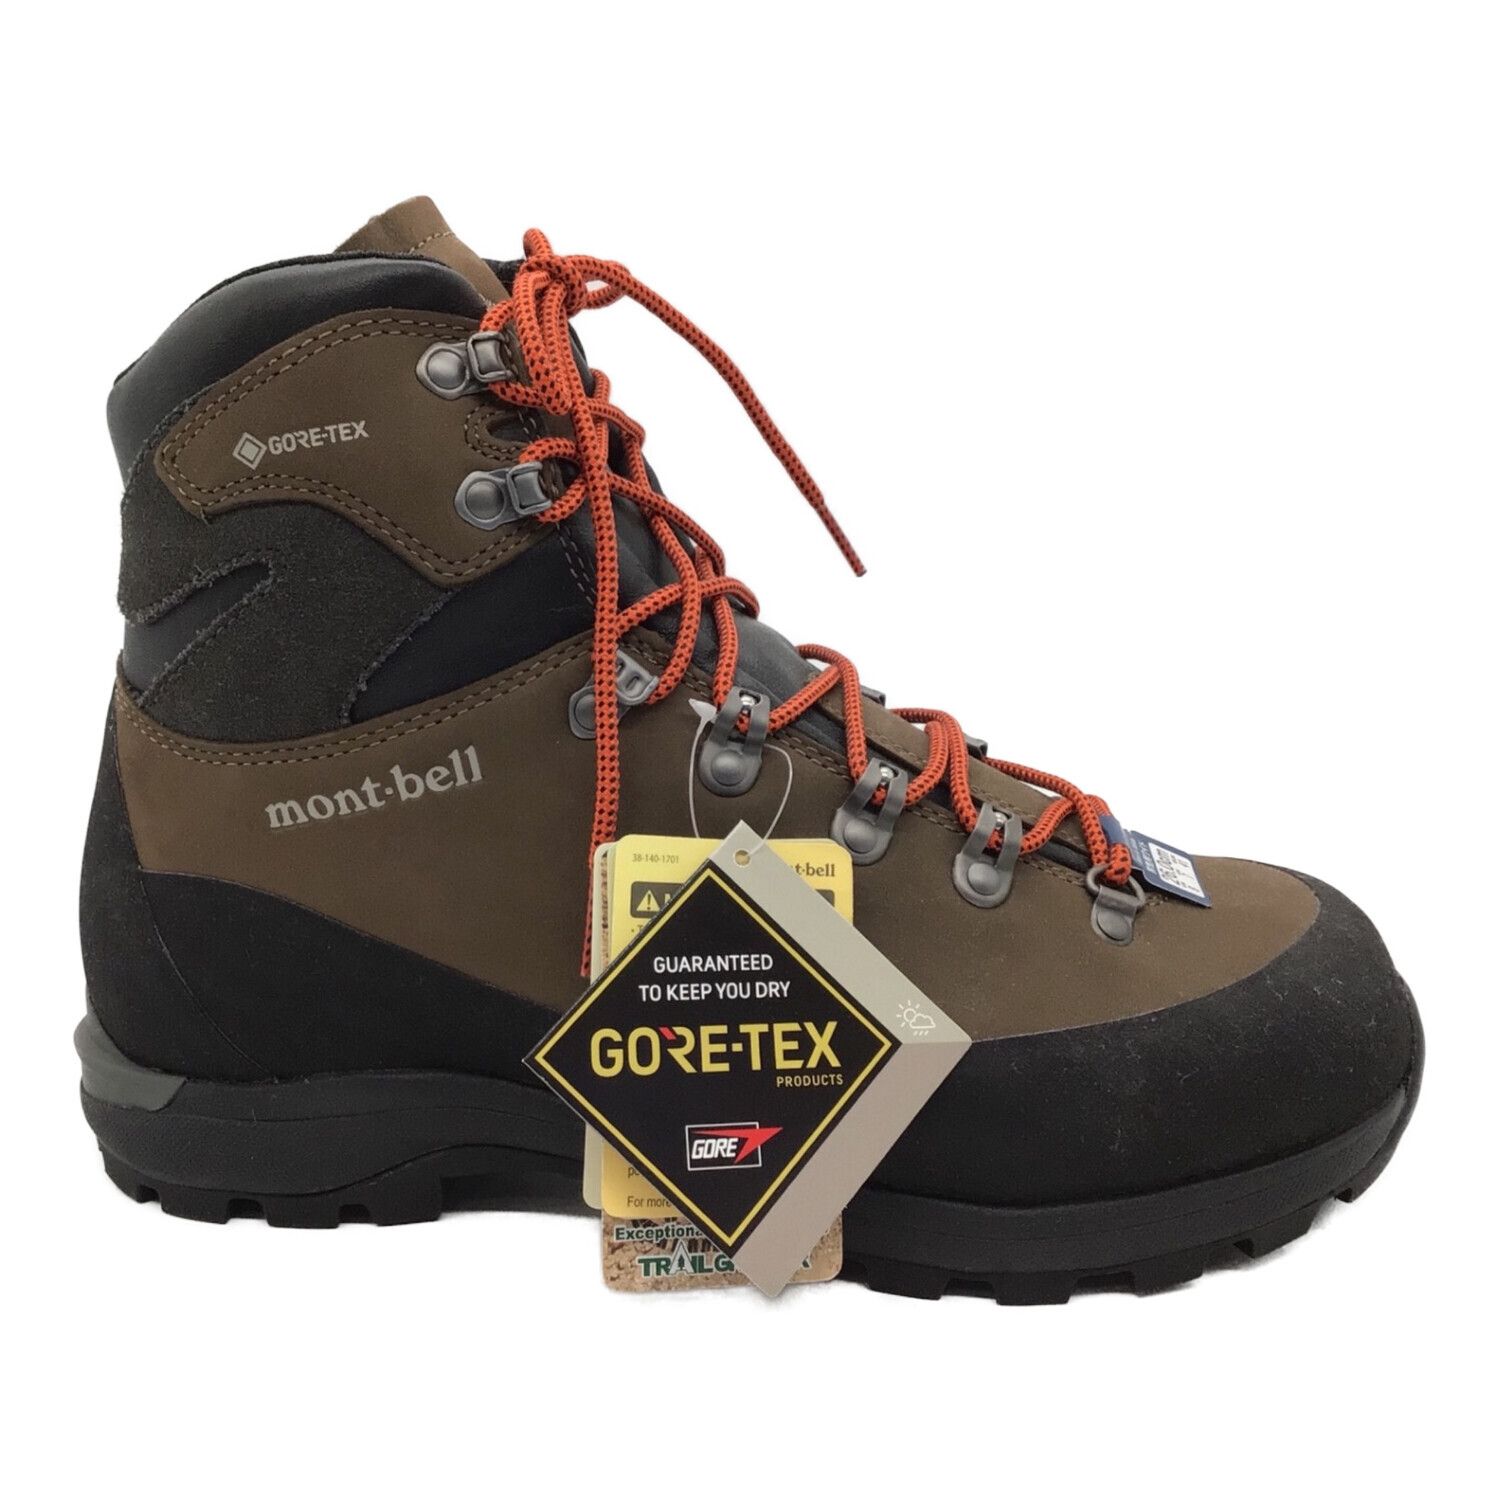 激安セール】【激安セール】登山靴 モンベル アルパインクルーザー2500 男性用26.5cm 登山用品 